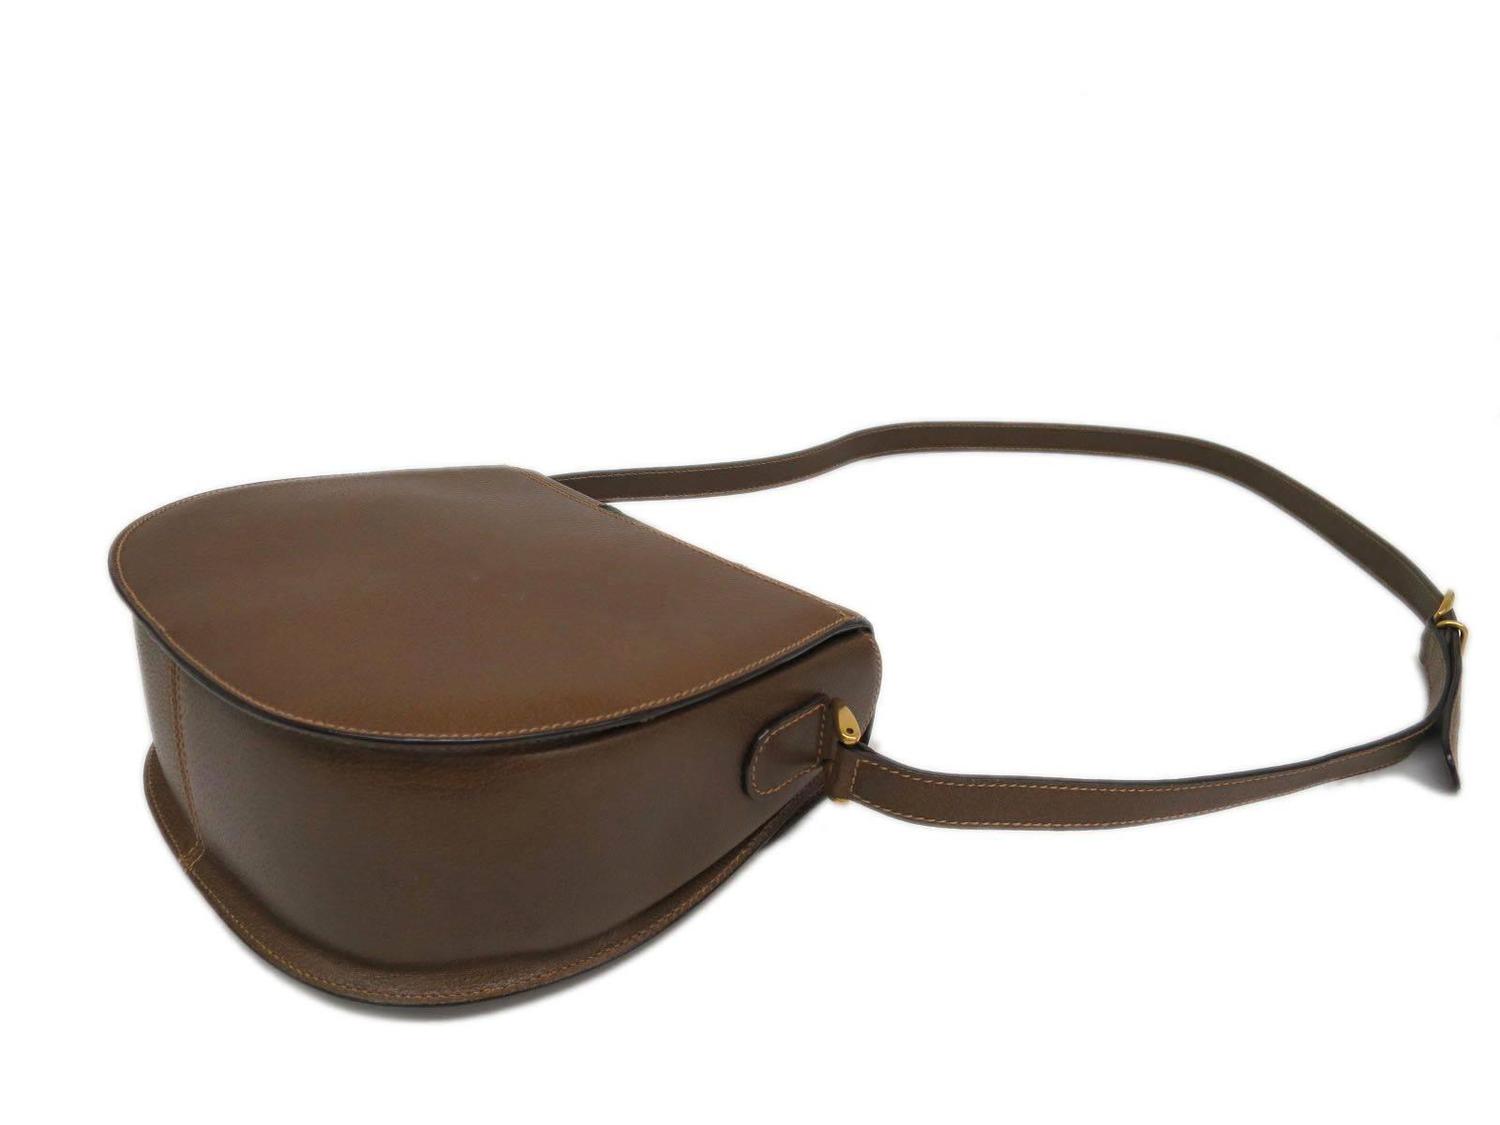 Gucci Vintage Leather Brown Crossbody Shoulder Bag at 1stdibs